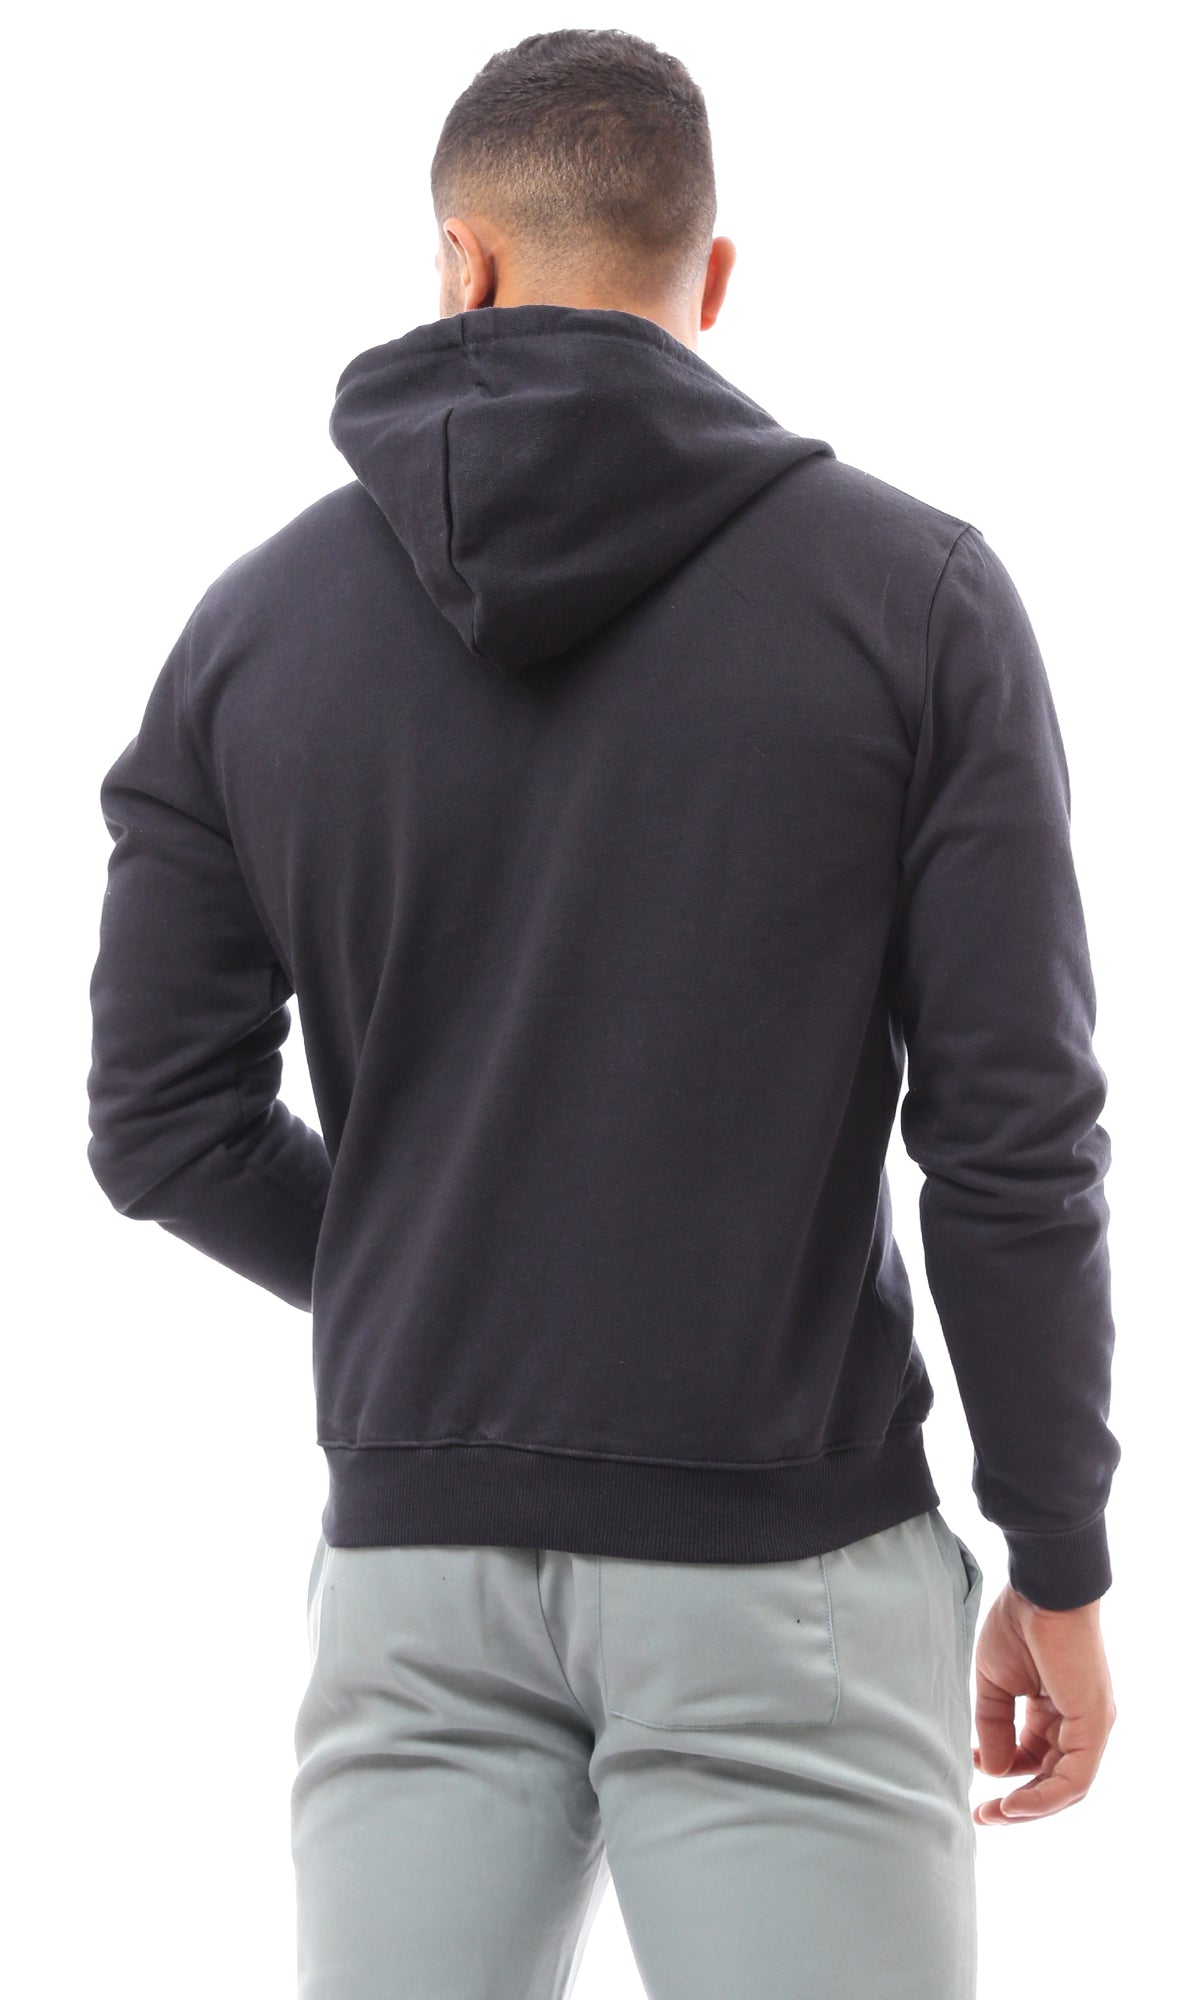 O172367 Front Zipper Black Heavy Winter Sweatshirt